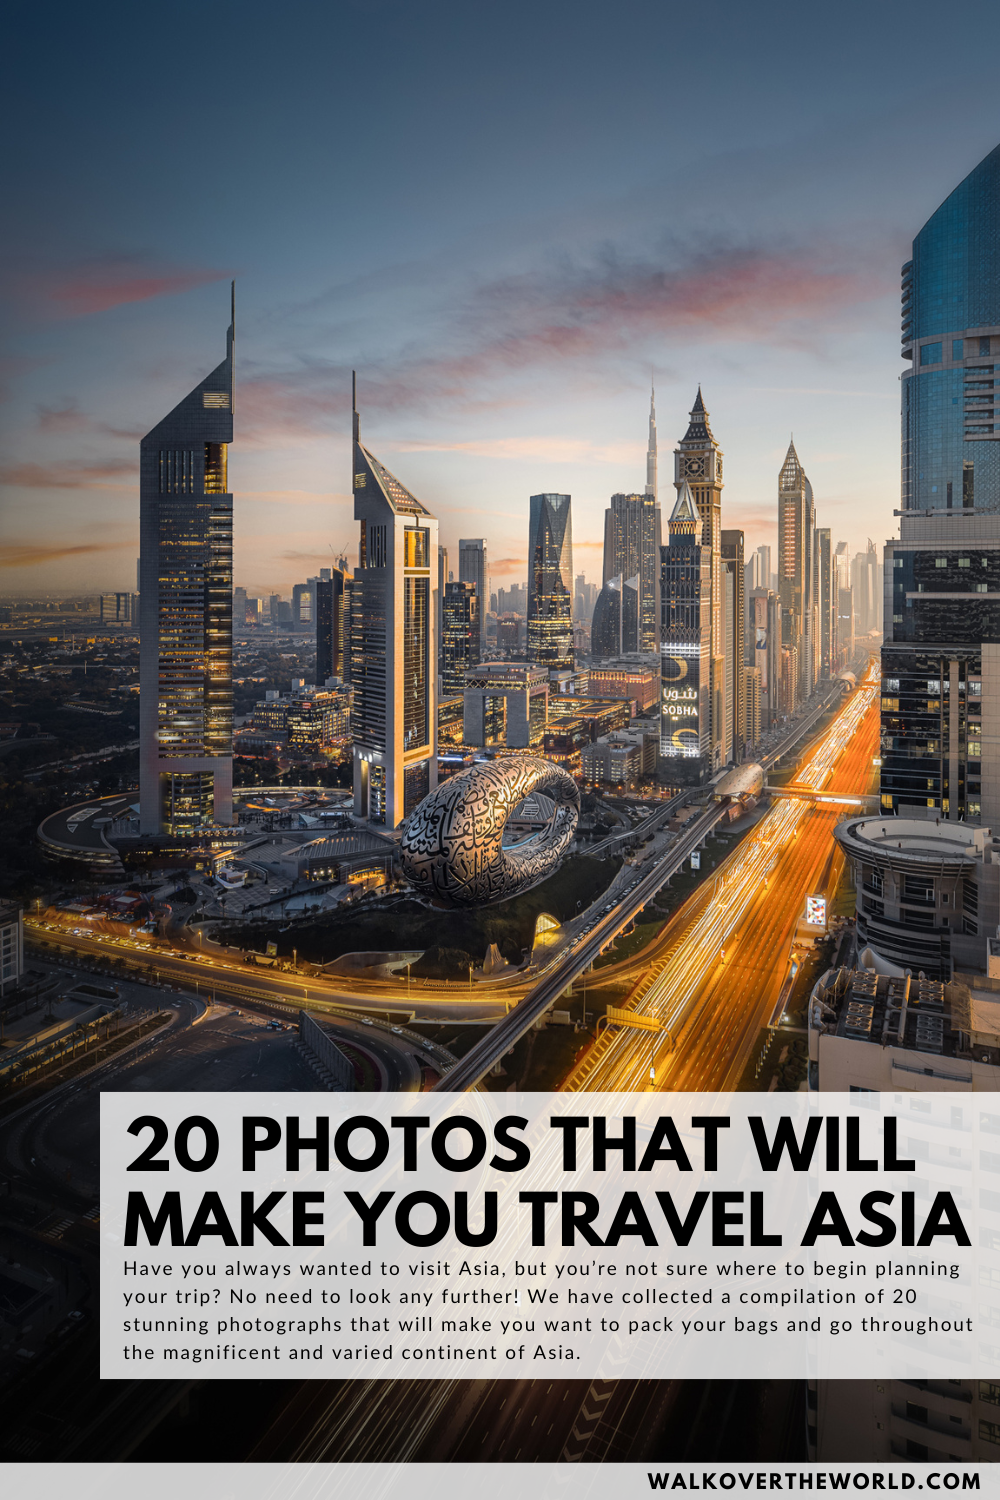 20 photos that will make you travel Asia, Dubai